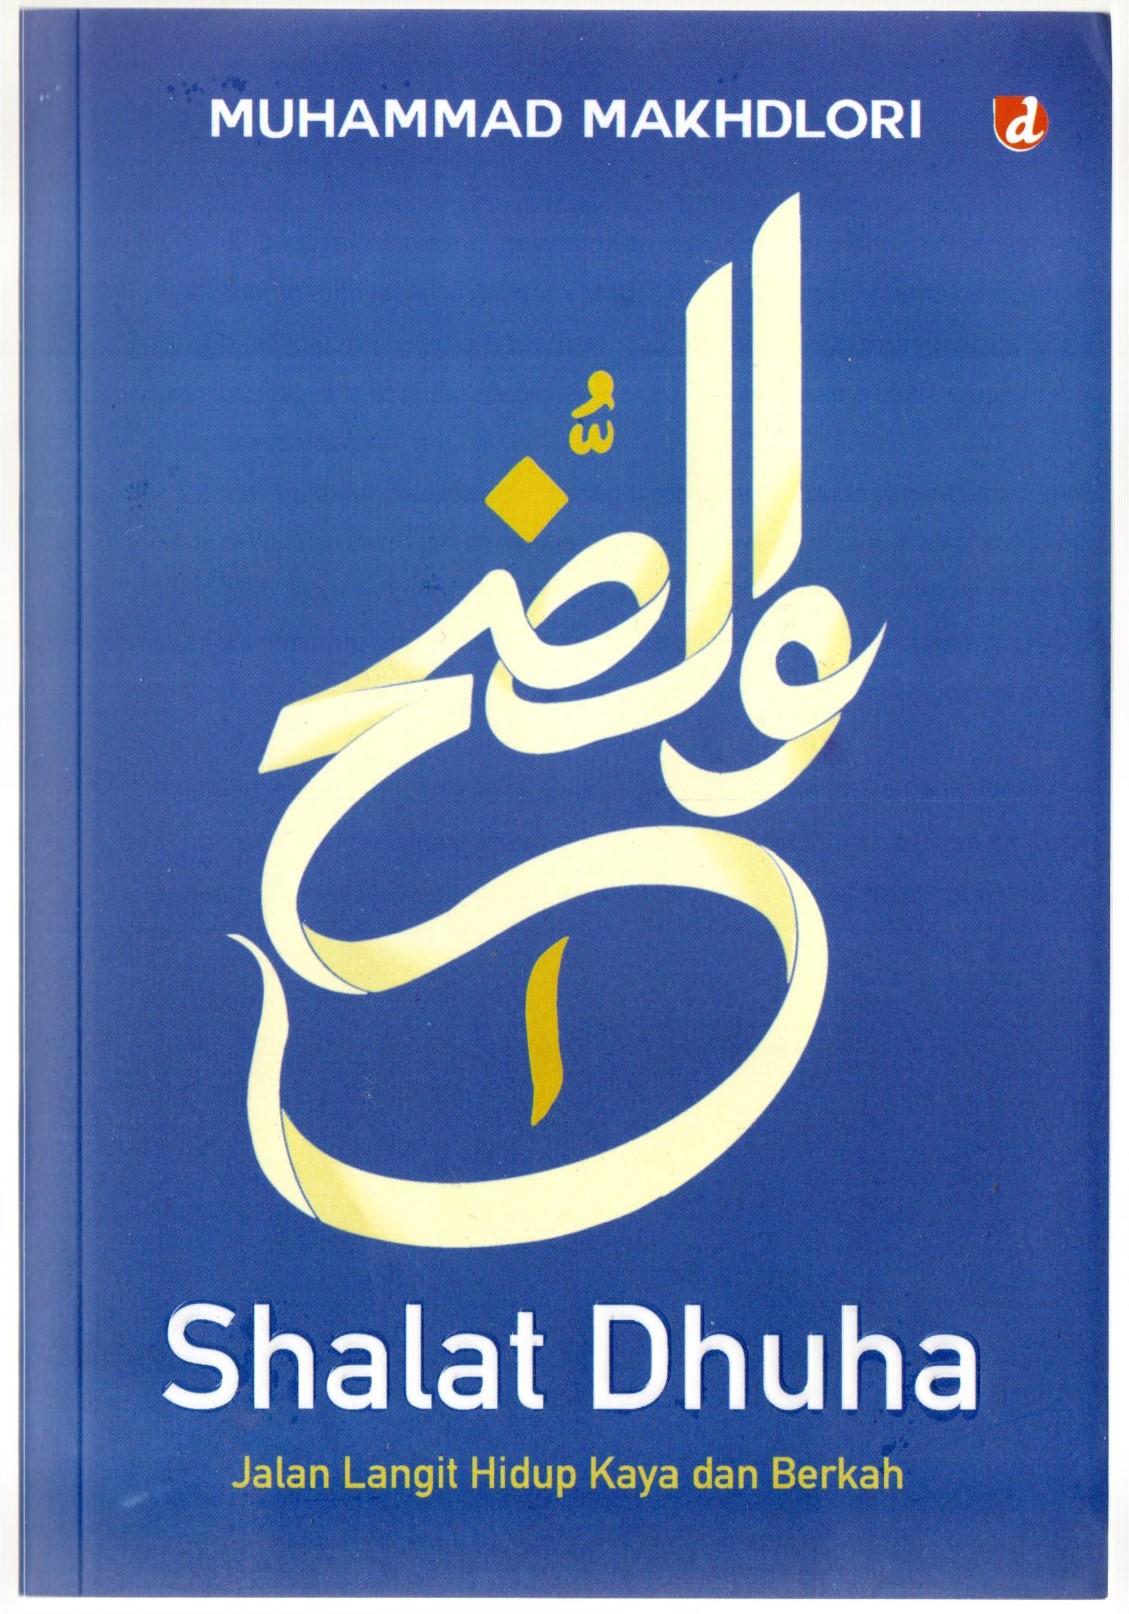 Shalat dhuha